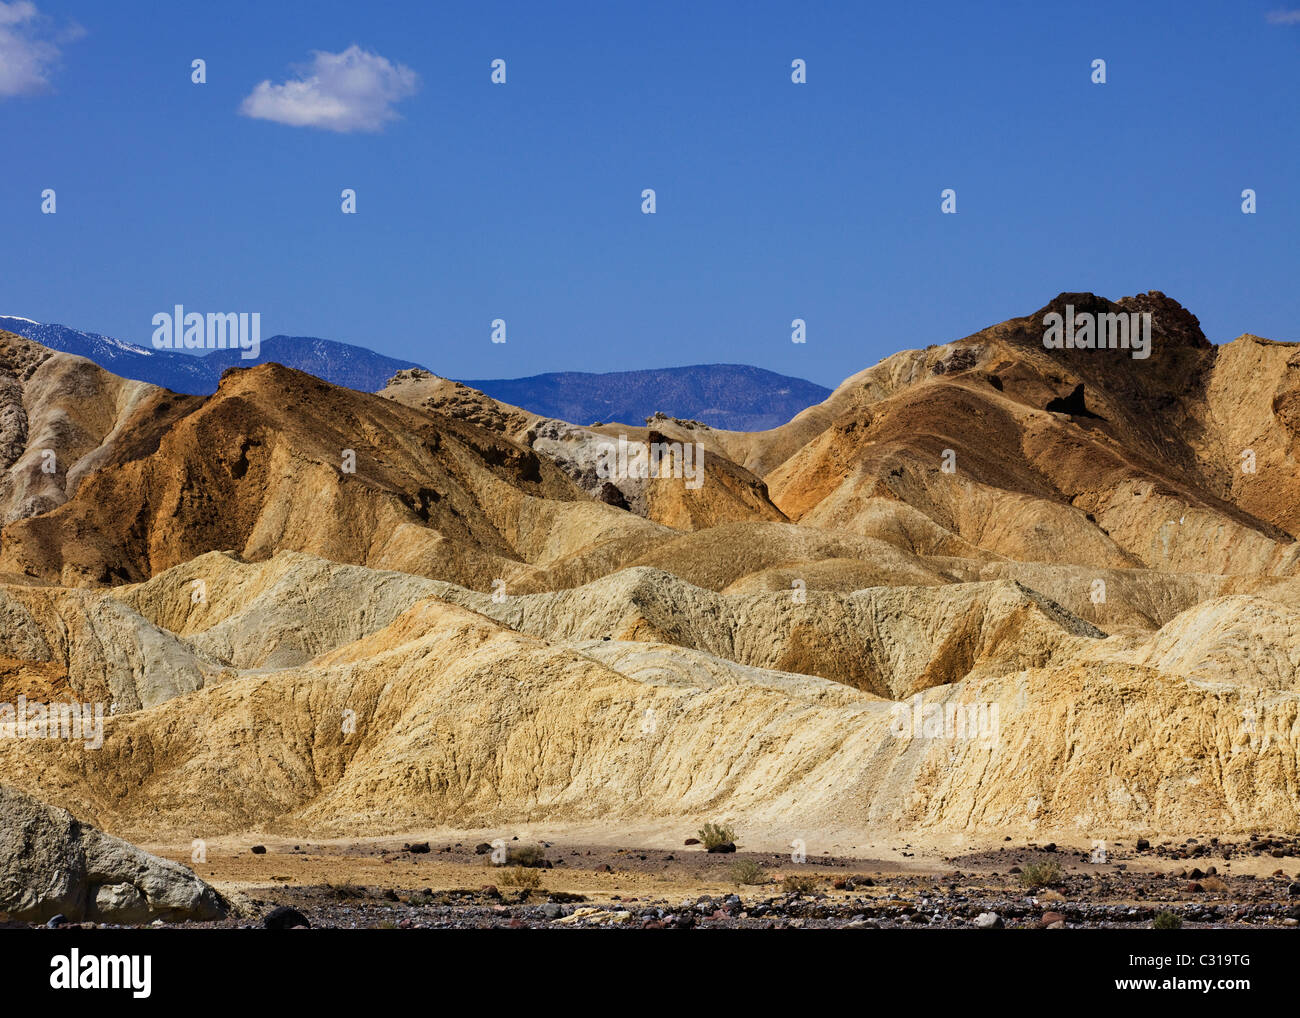 Les pentes désertiques érodés montrant des couches de roches colorées - California USA Banque D'Images